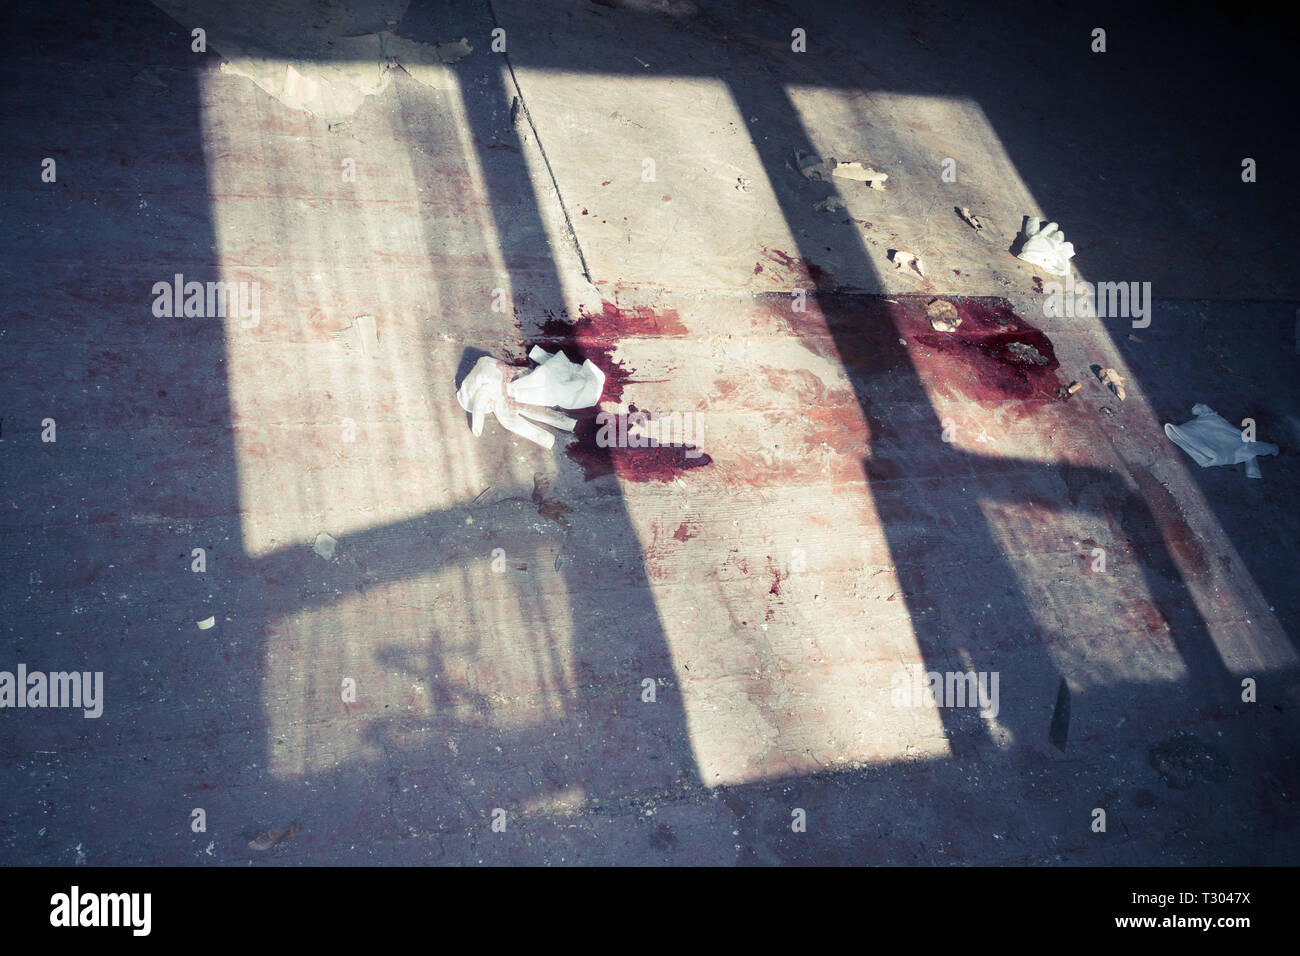 Scena del crimine, Assassinio nella vecchia casa abbandonata, il lavoro dei ricercatori Foto Stock